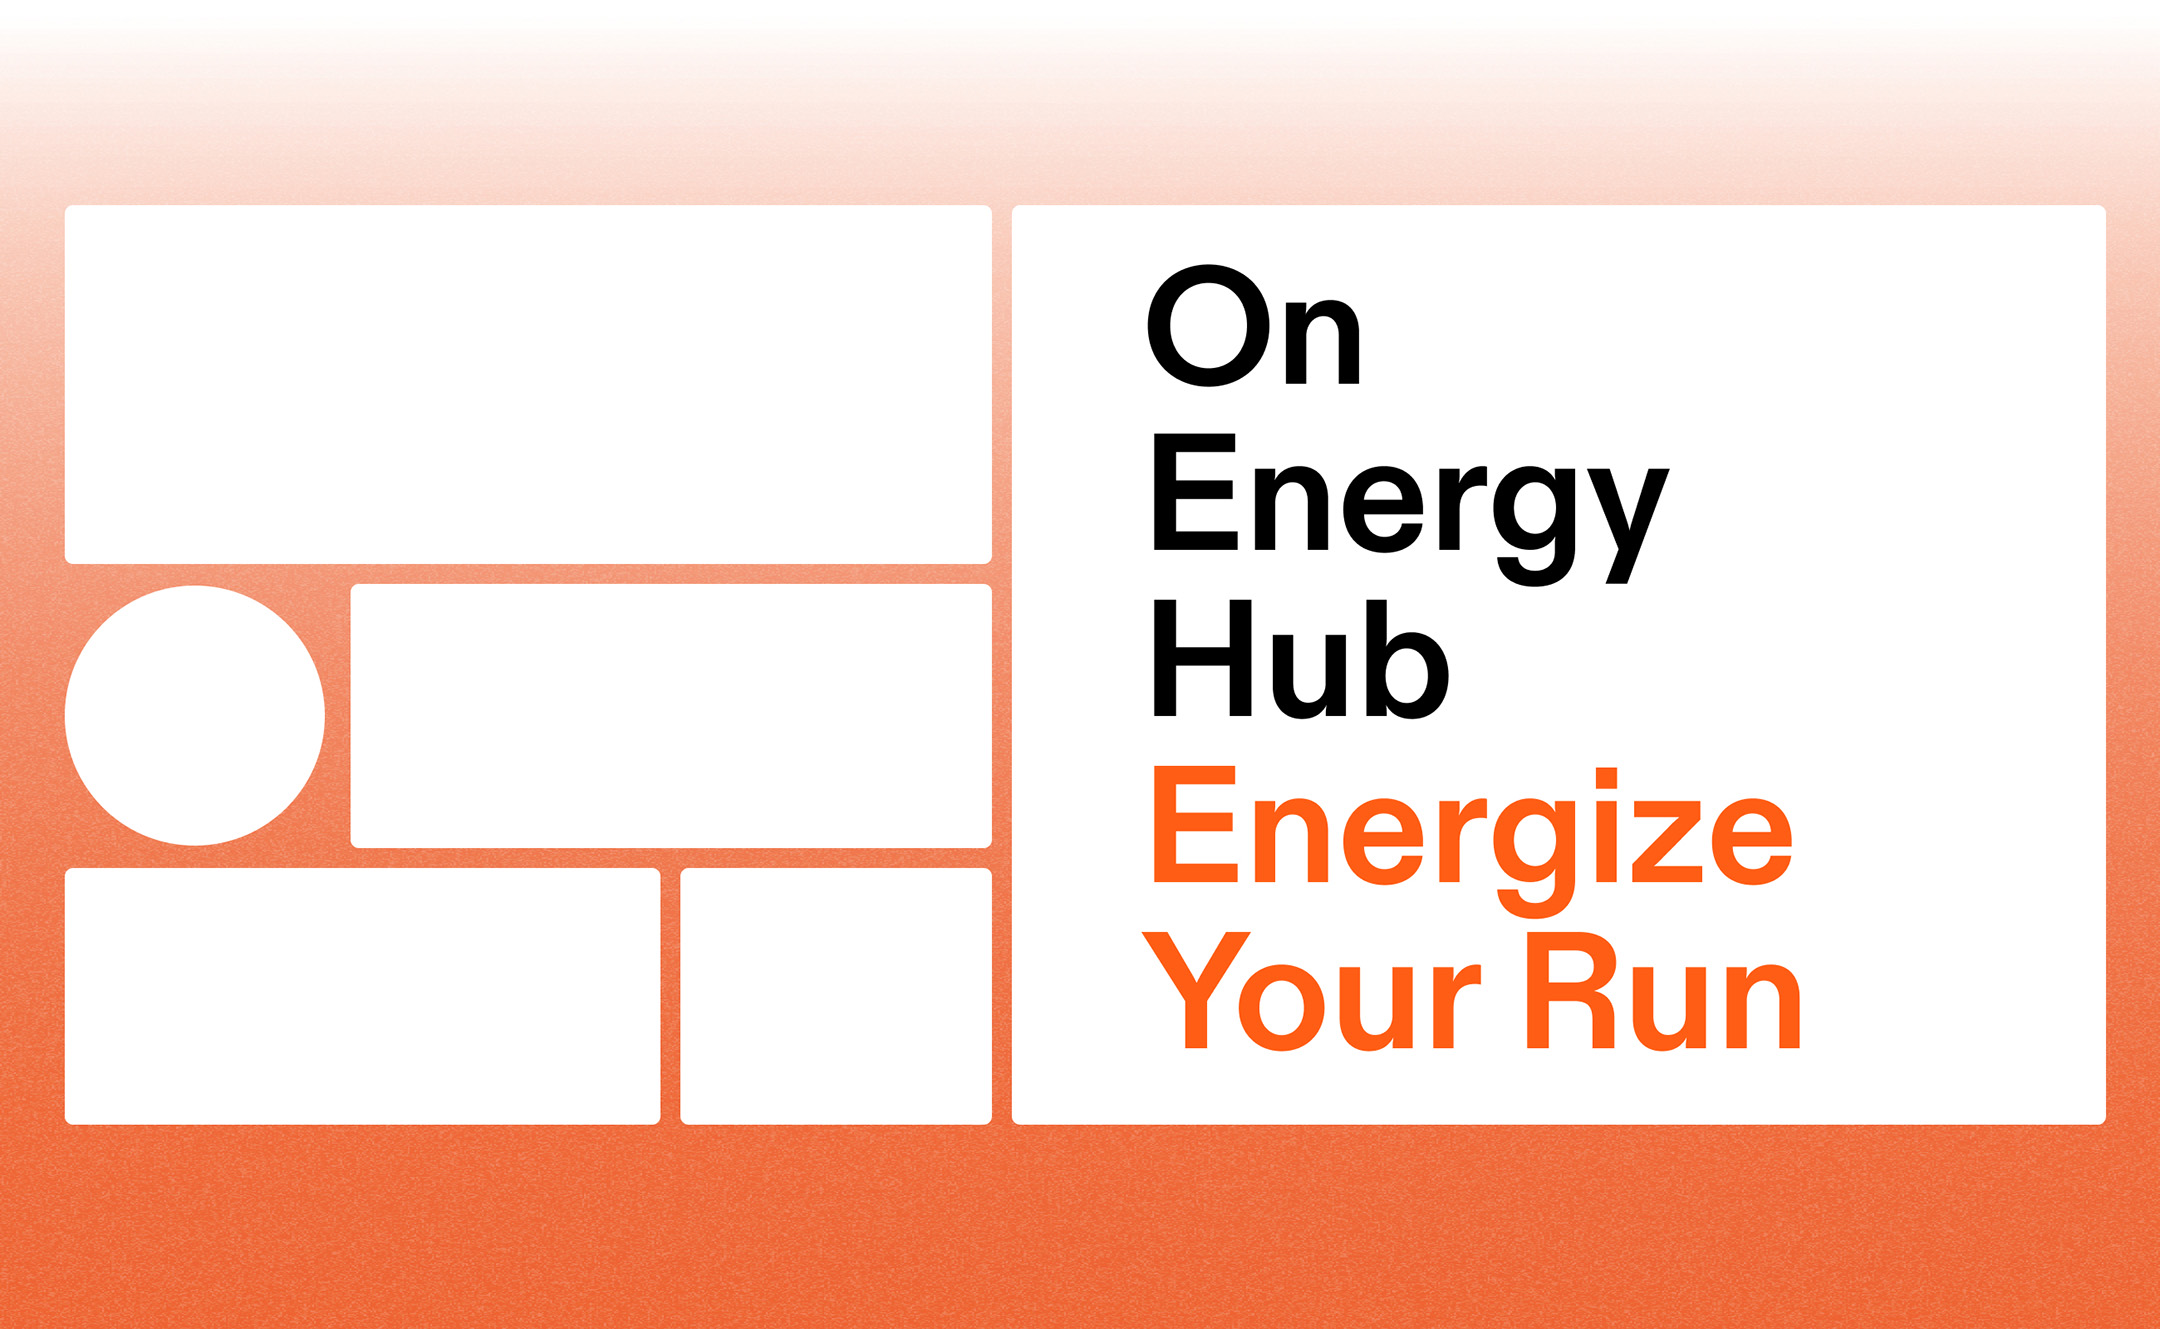 Onが、ポップアップスペース「On Energy Hub」を日本橋兜町に3日間の期間限定でオープン。ランナーがエネルギーを補給するための実験的な空間に